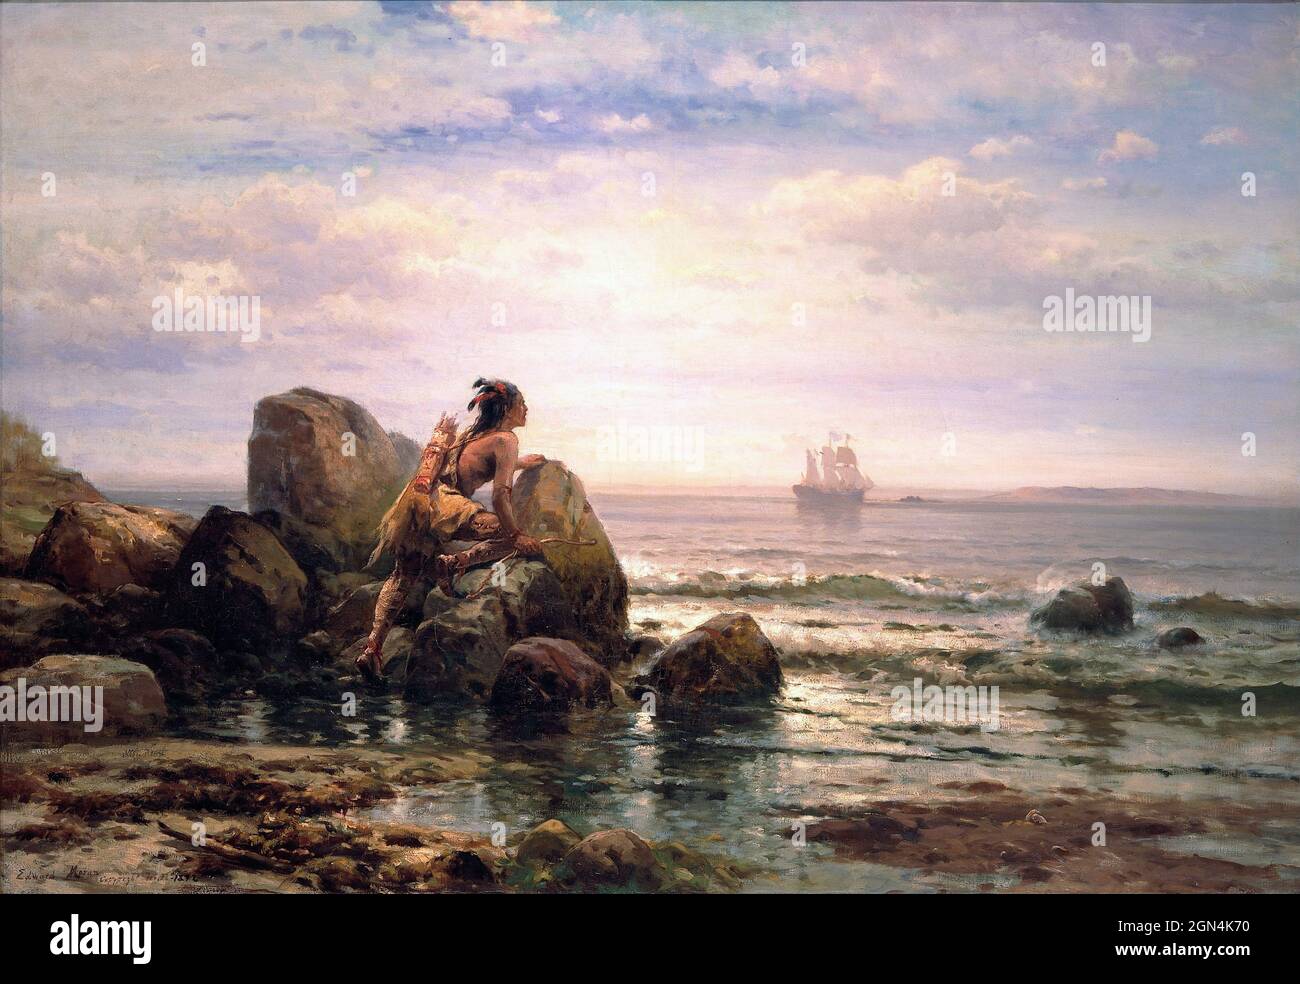 Henrik Hudson entre dans le port de New York, le 11 septembre 1609 par l'artiste américain d'origine anglaise Edward Moran (1829-1901), huile sur toile, 1892 Banque D'Images